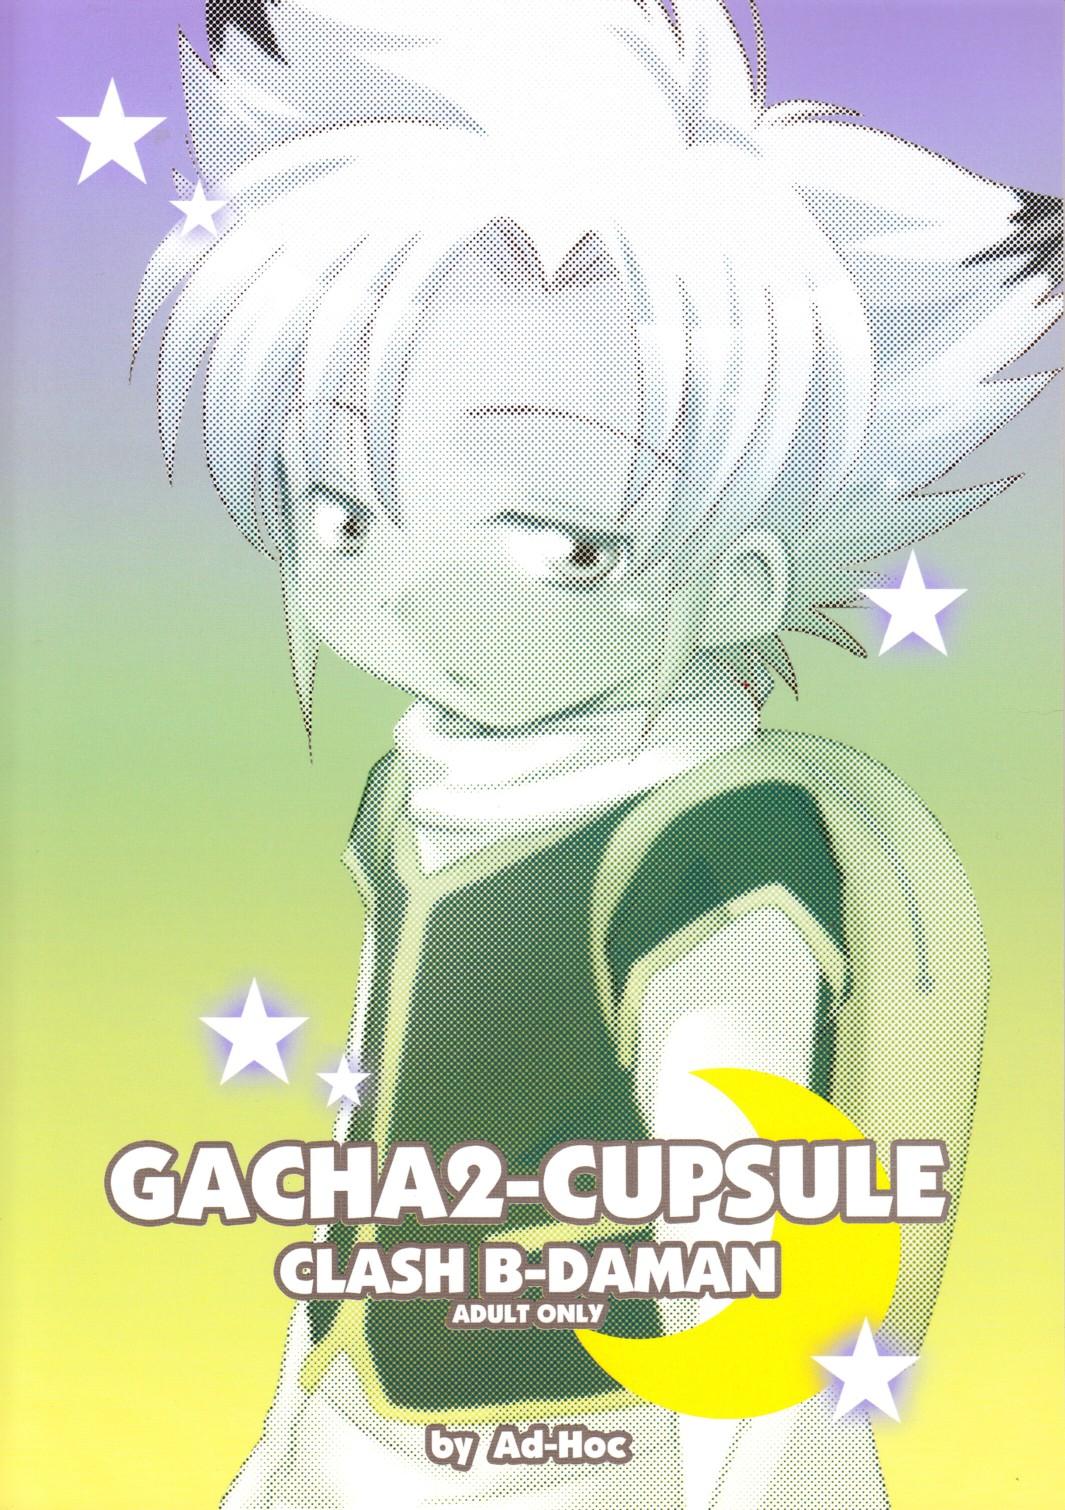 Ad-Hoc - Gacha 2 Cupsule 1